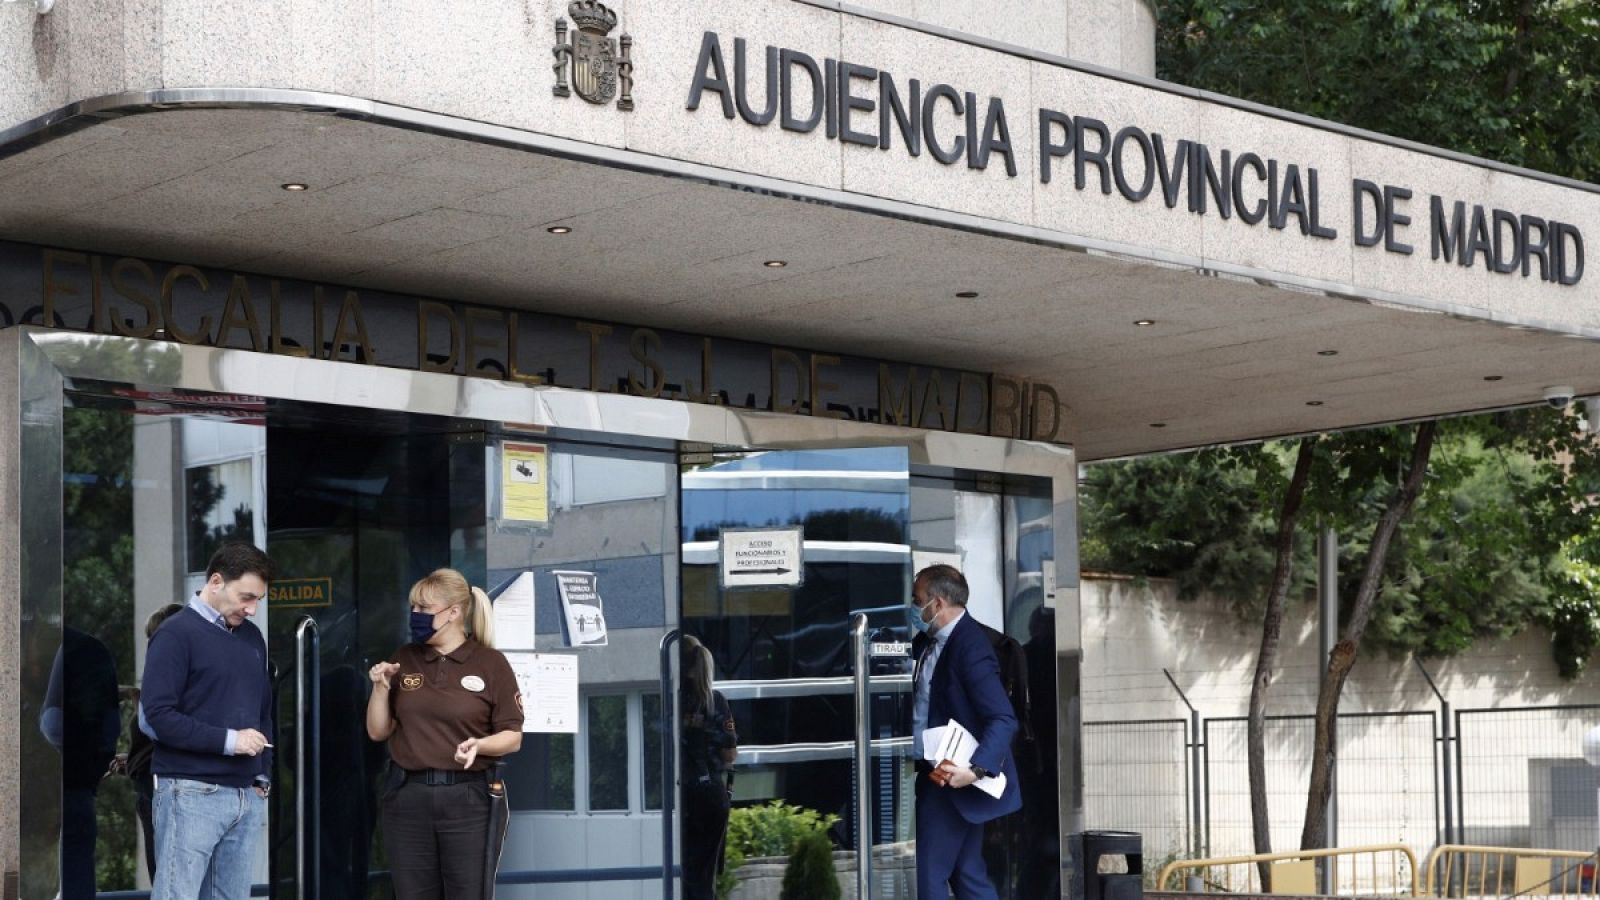 Vista del acceso a la Audiencia Provincial de Madrid